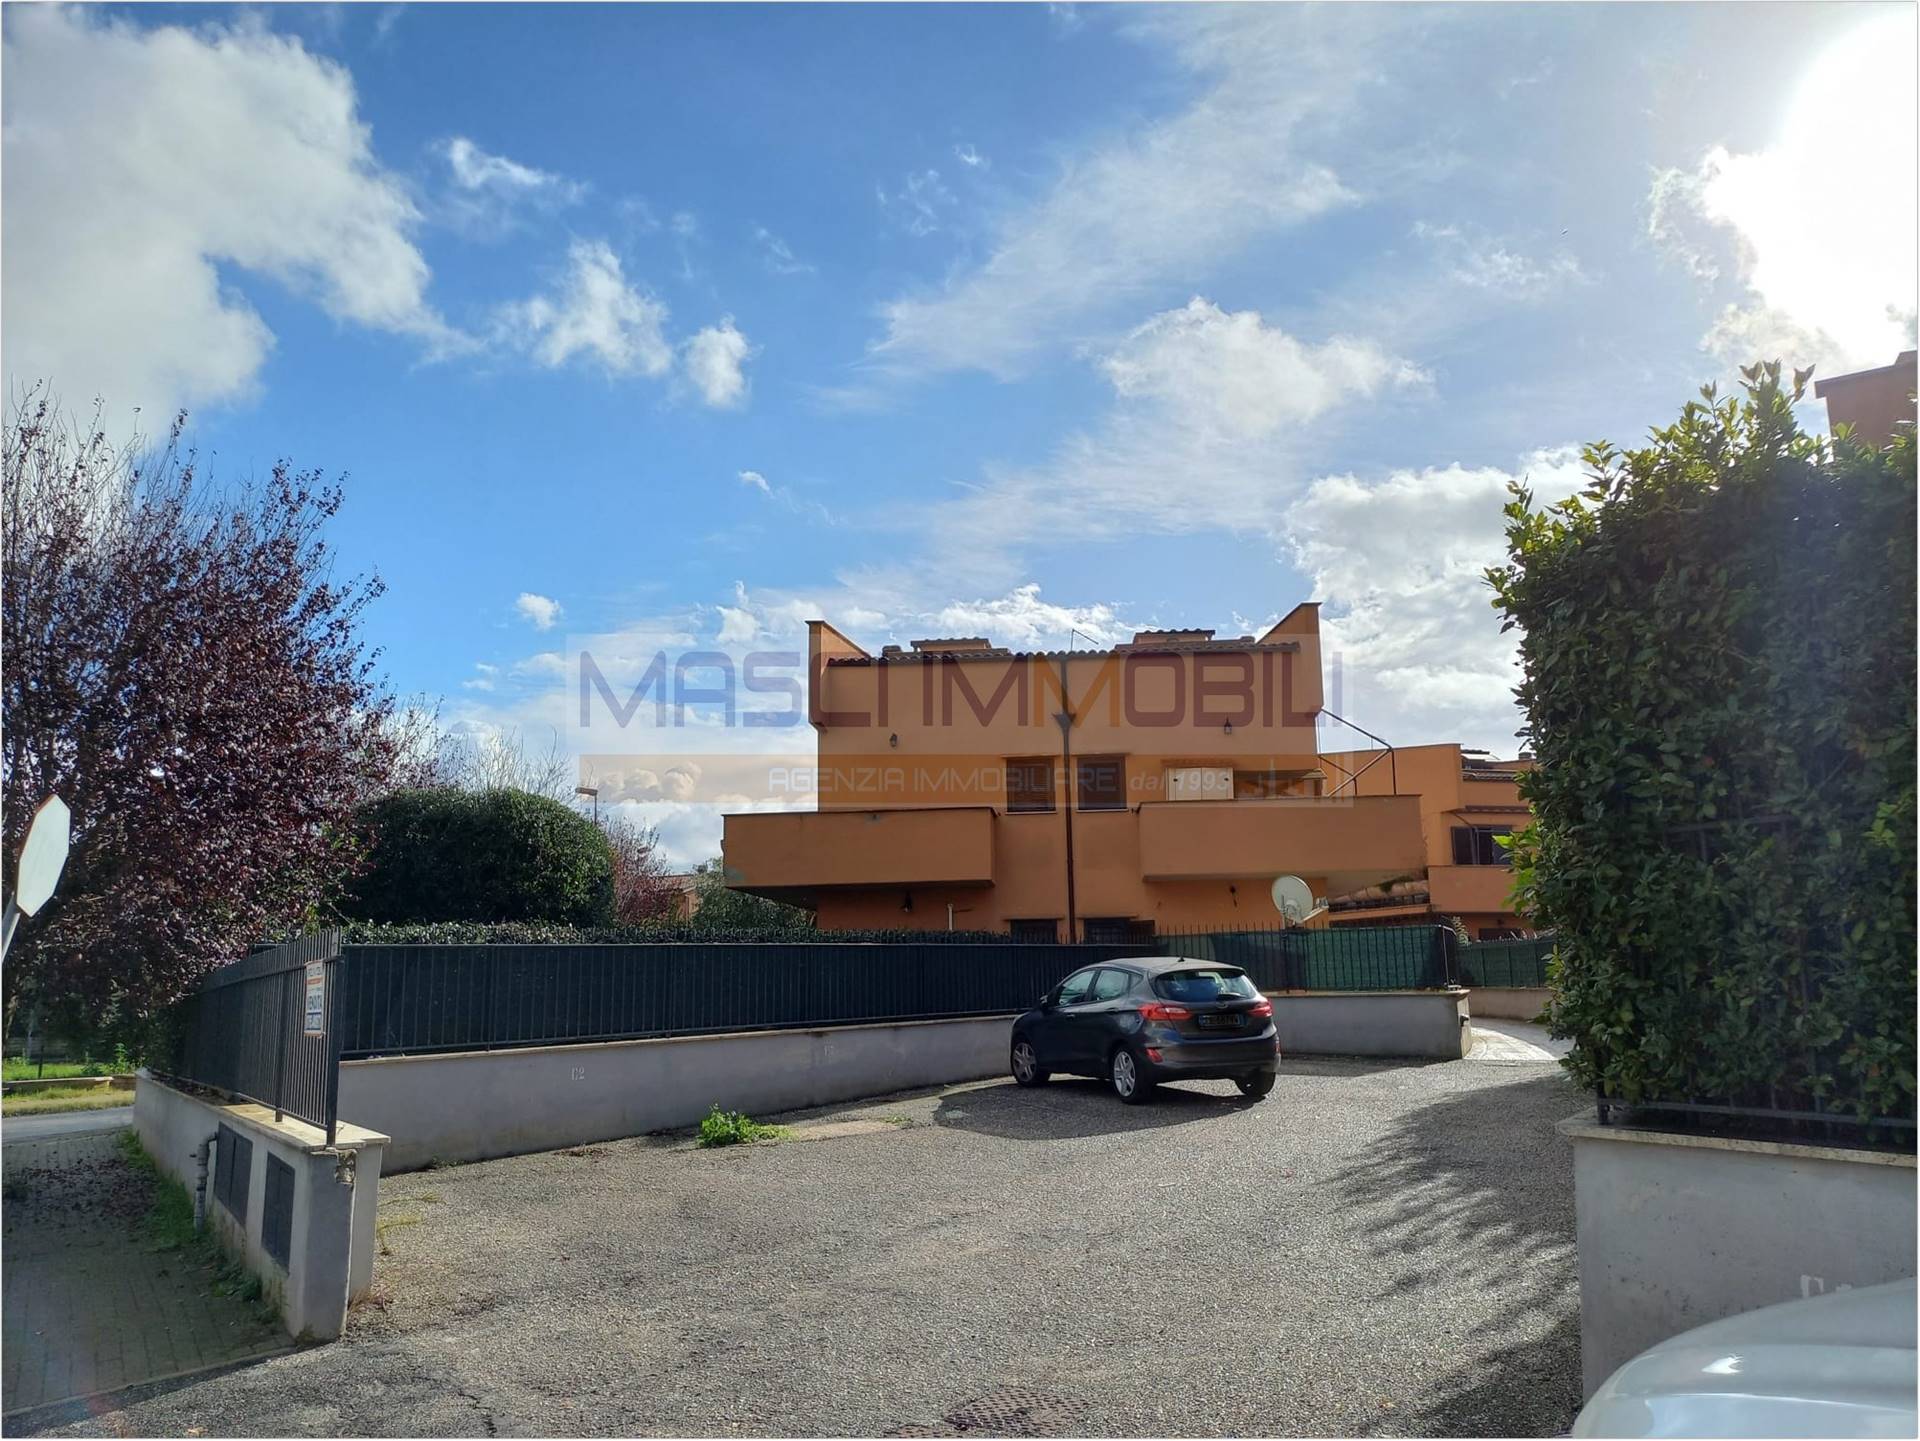 Appartamento in vendita a Fiano Romano, 2 locali, prezzo € 119.000 | CambioCasa.it